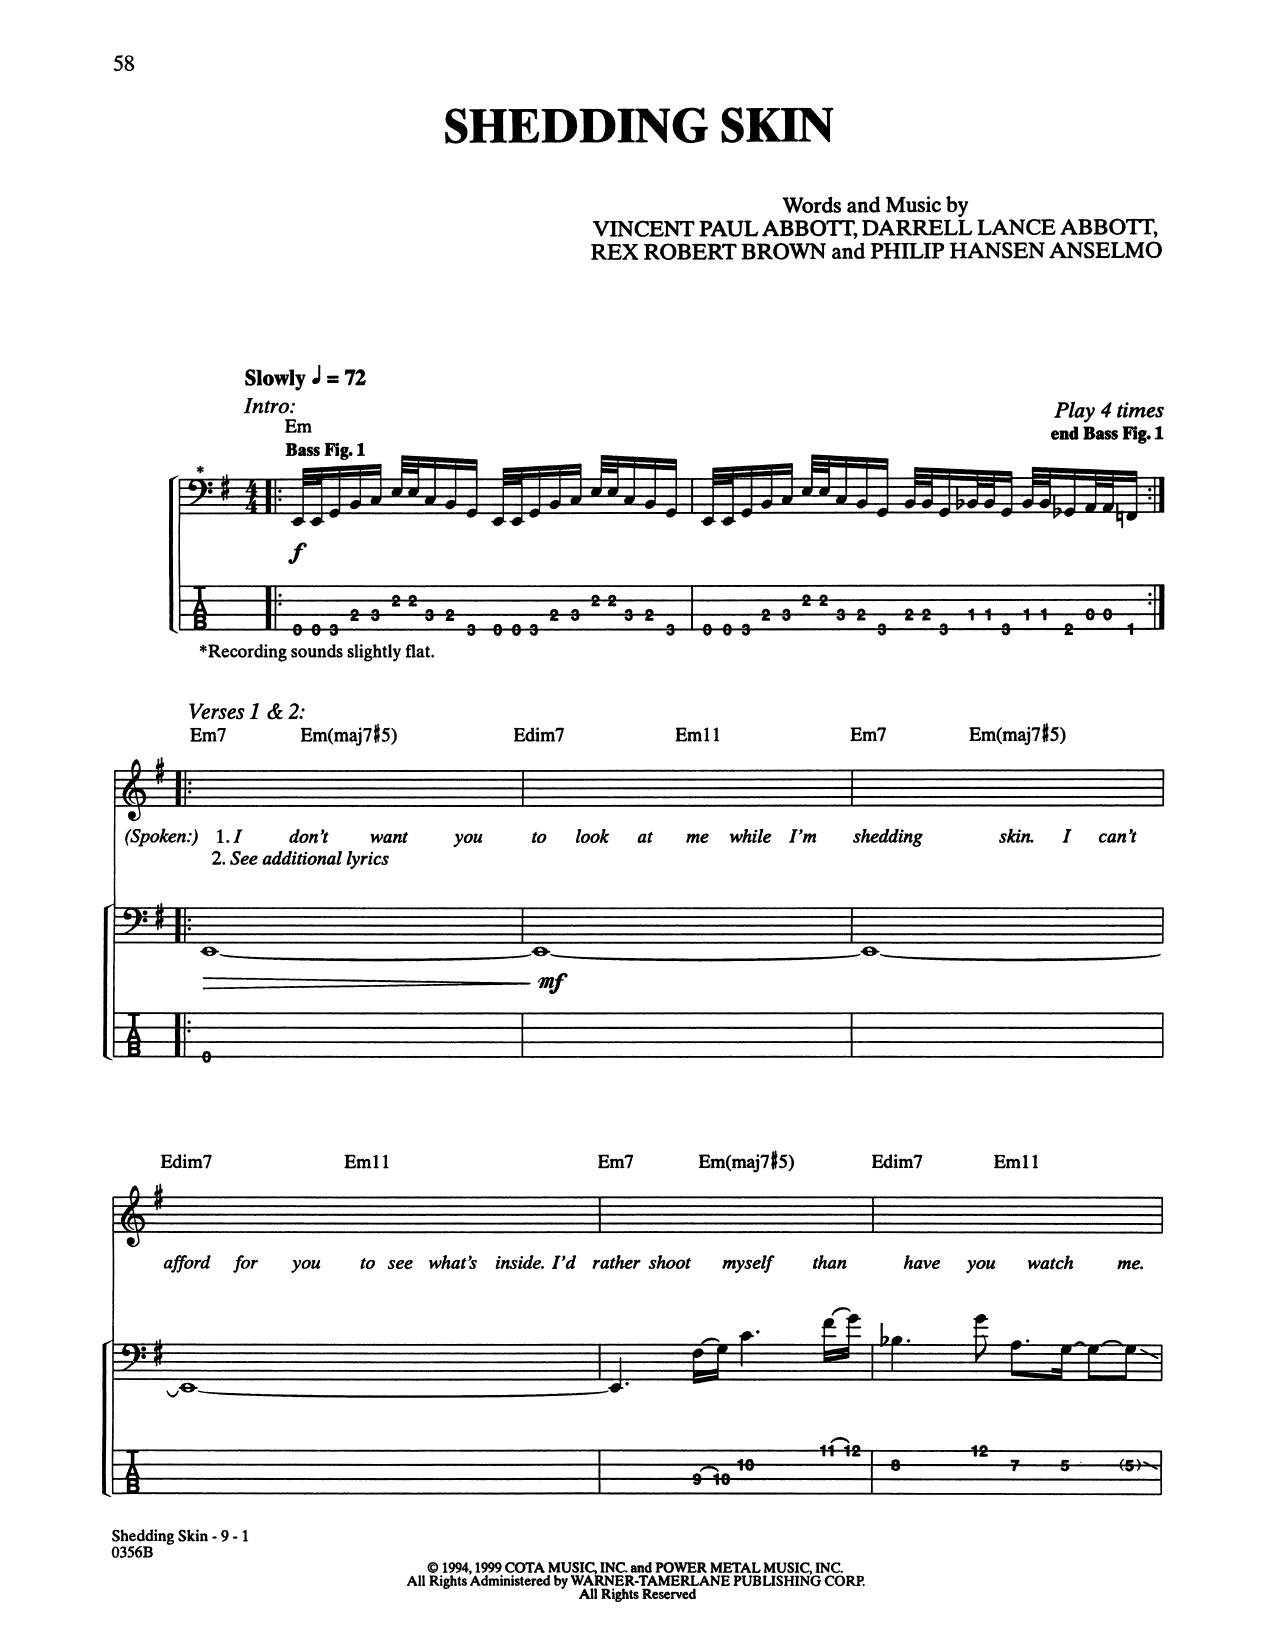 Pantera Shedding Skin Sheet Music Notes & Chords for Bass Guitar Tab - Download or Print PDF